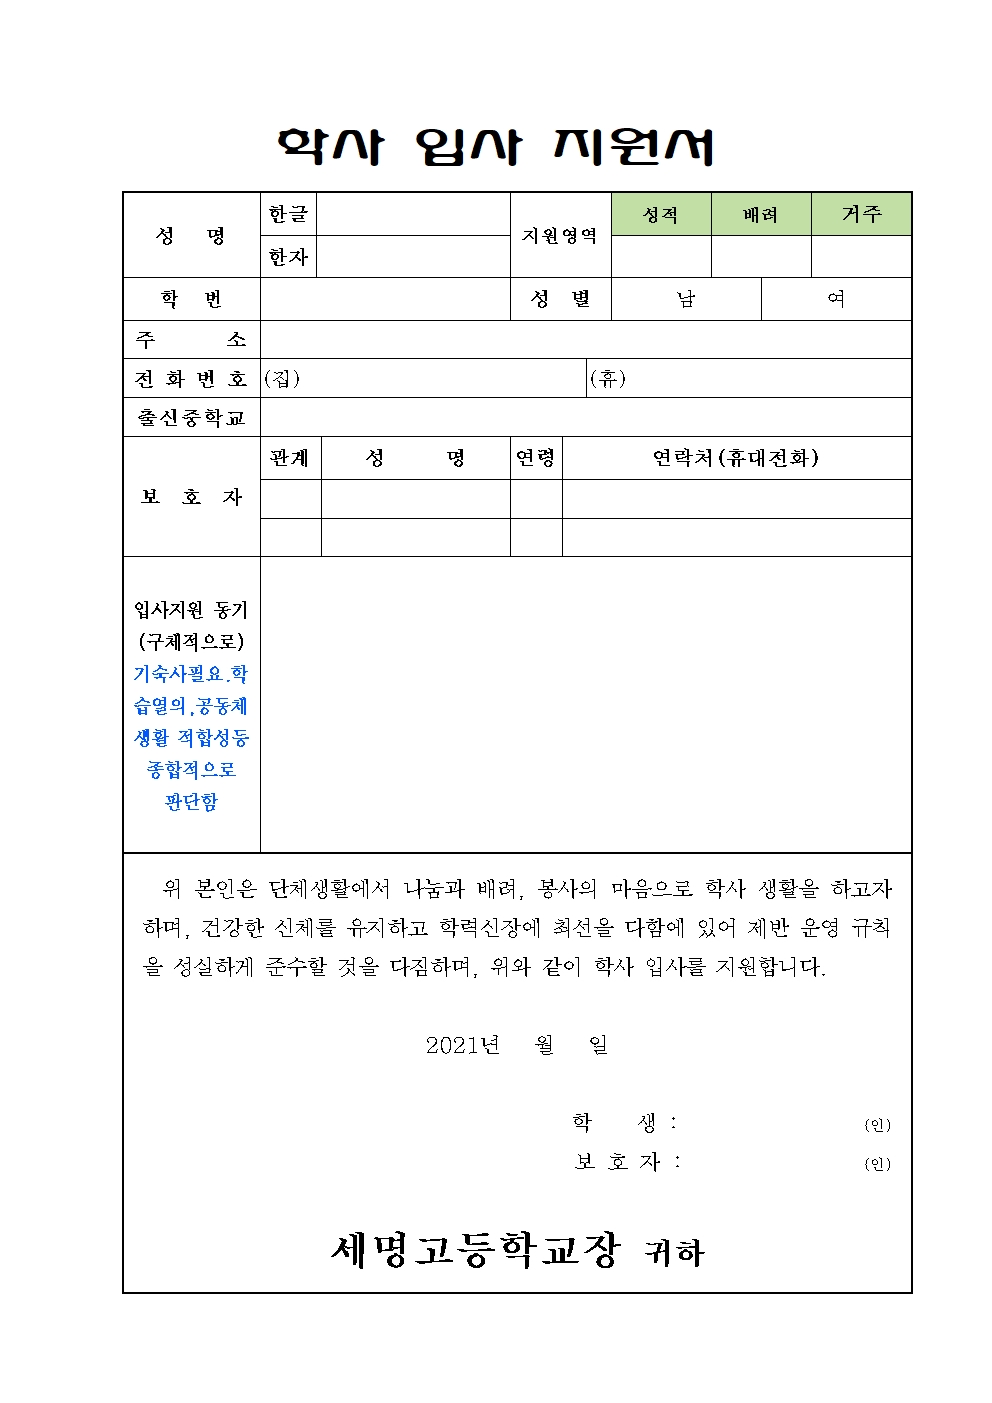 2022-1 세명학사생(2,3학년) 선발공고(1)002